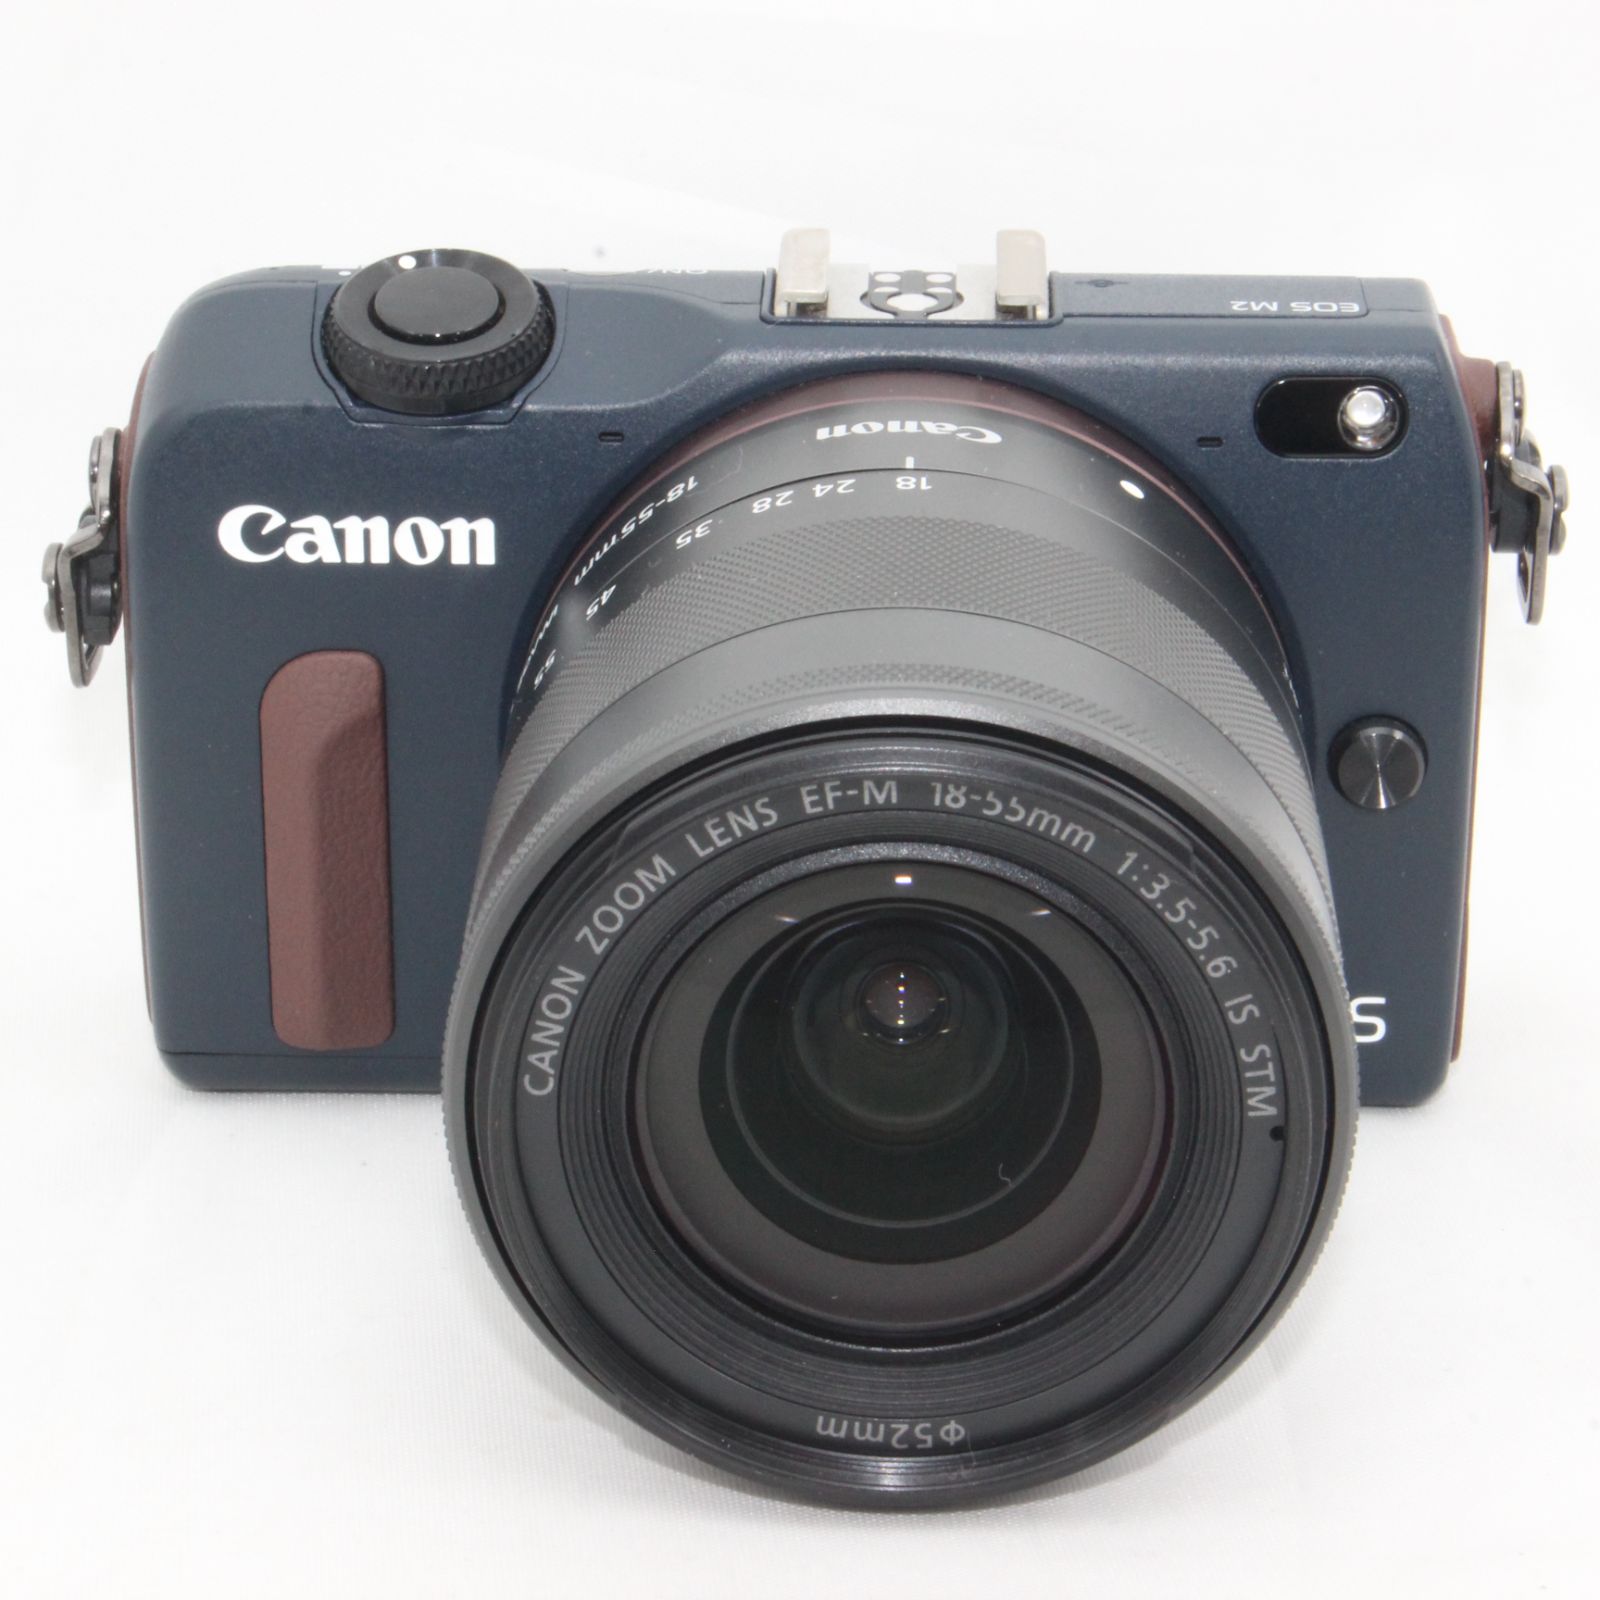 週間売れ筋 神戸リセールショップCanon ミラーレス一眼カメラ EOS M3 レンズキット ホワイト EF-M18-55mm F3.5-5.6 IS  STM 付属 EO